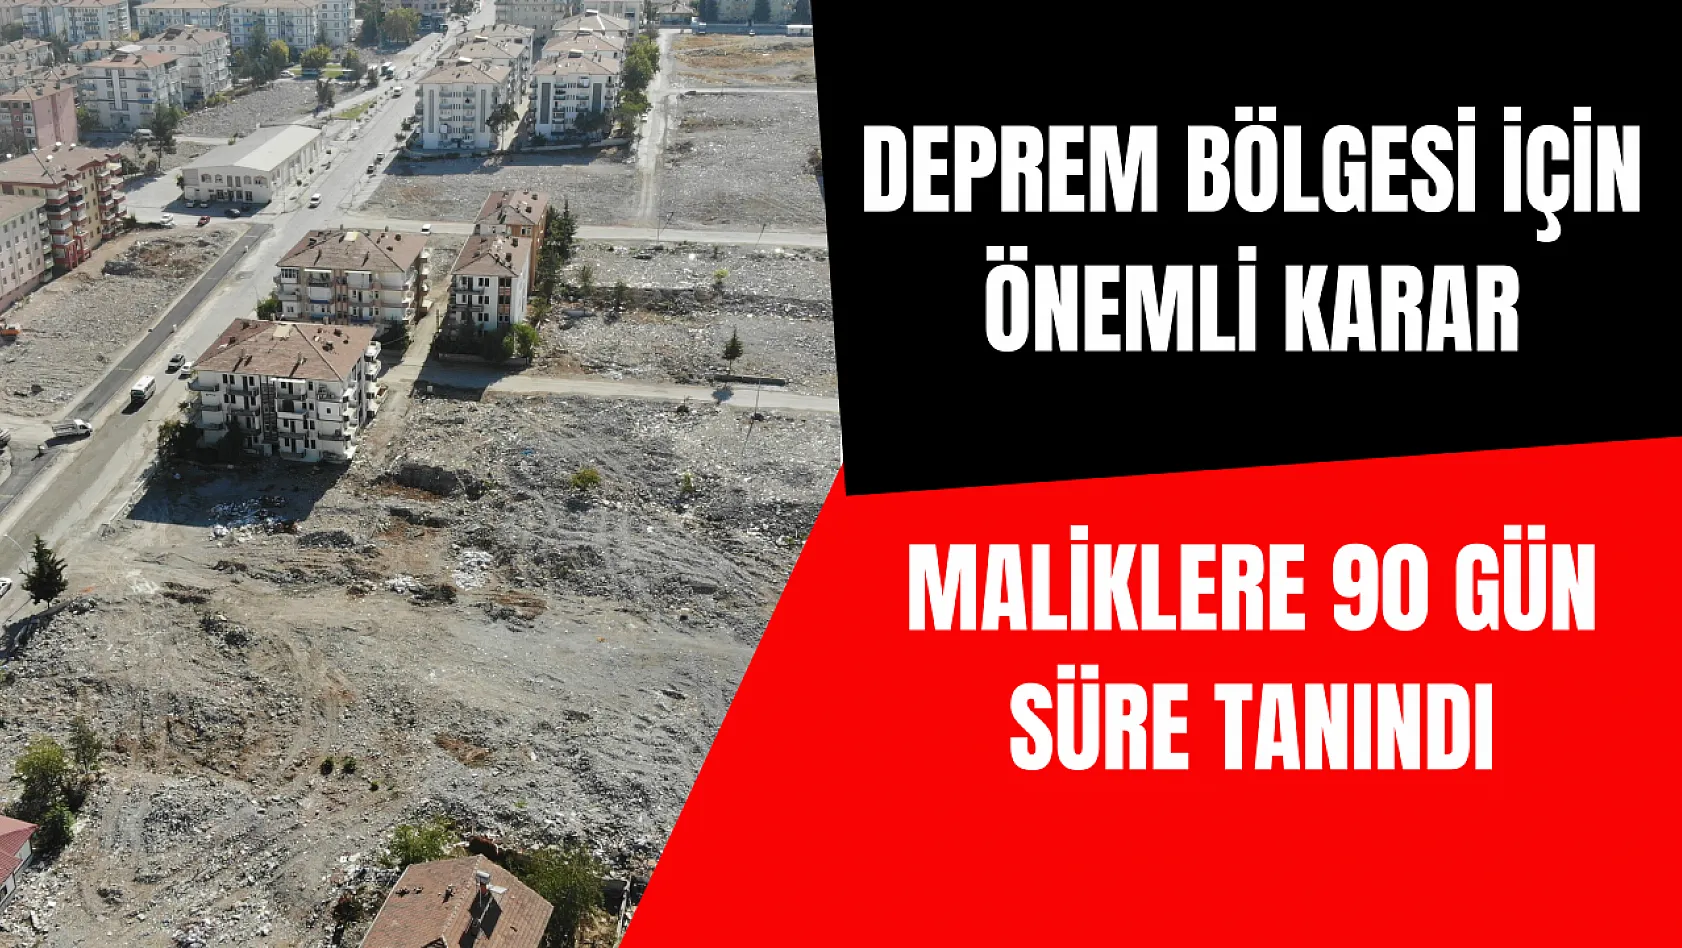 Deprem bölgesi için  önemli karar: Maliklere 90 gün süre tanındı